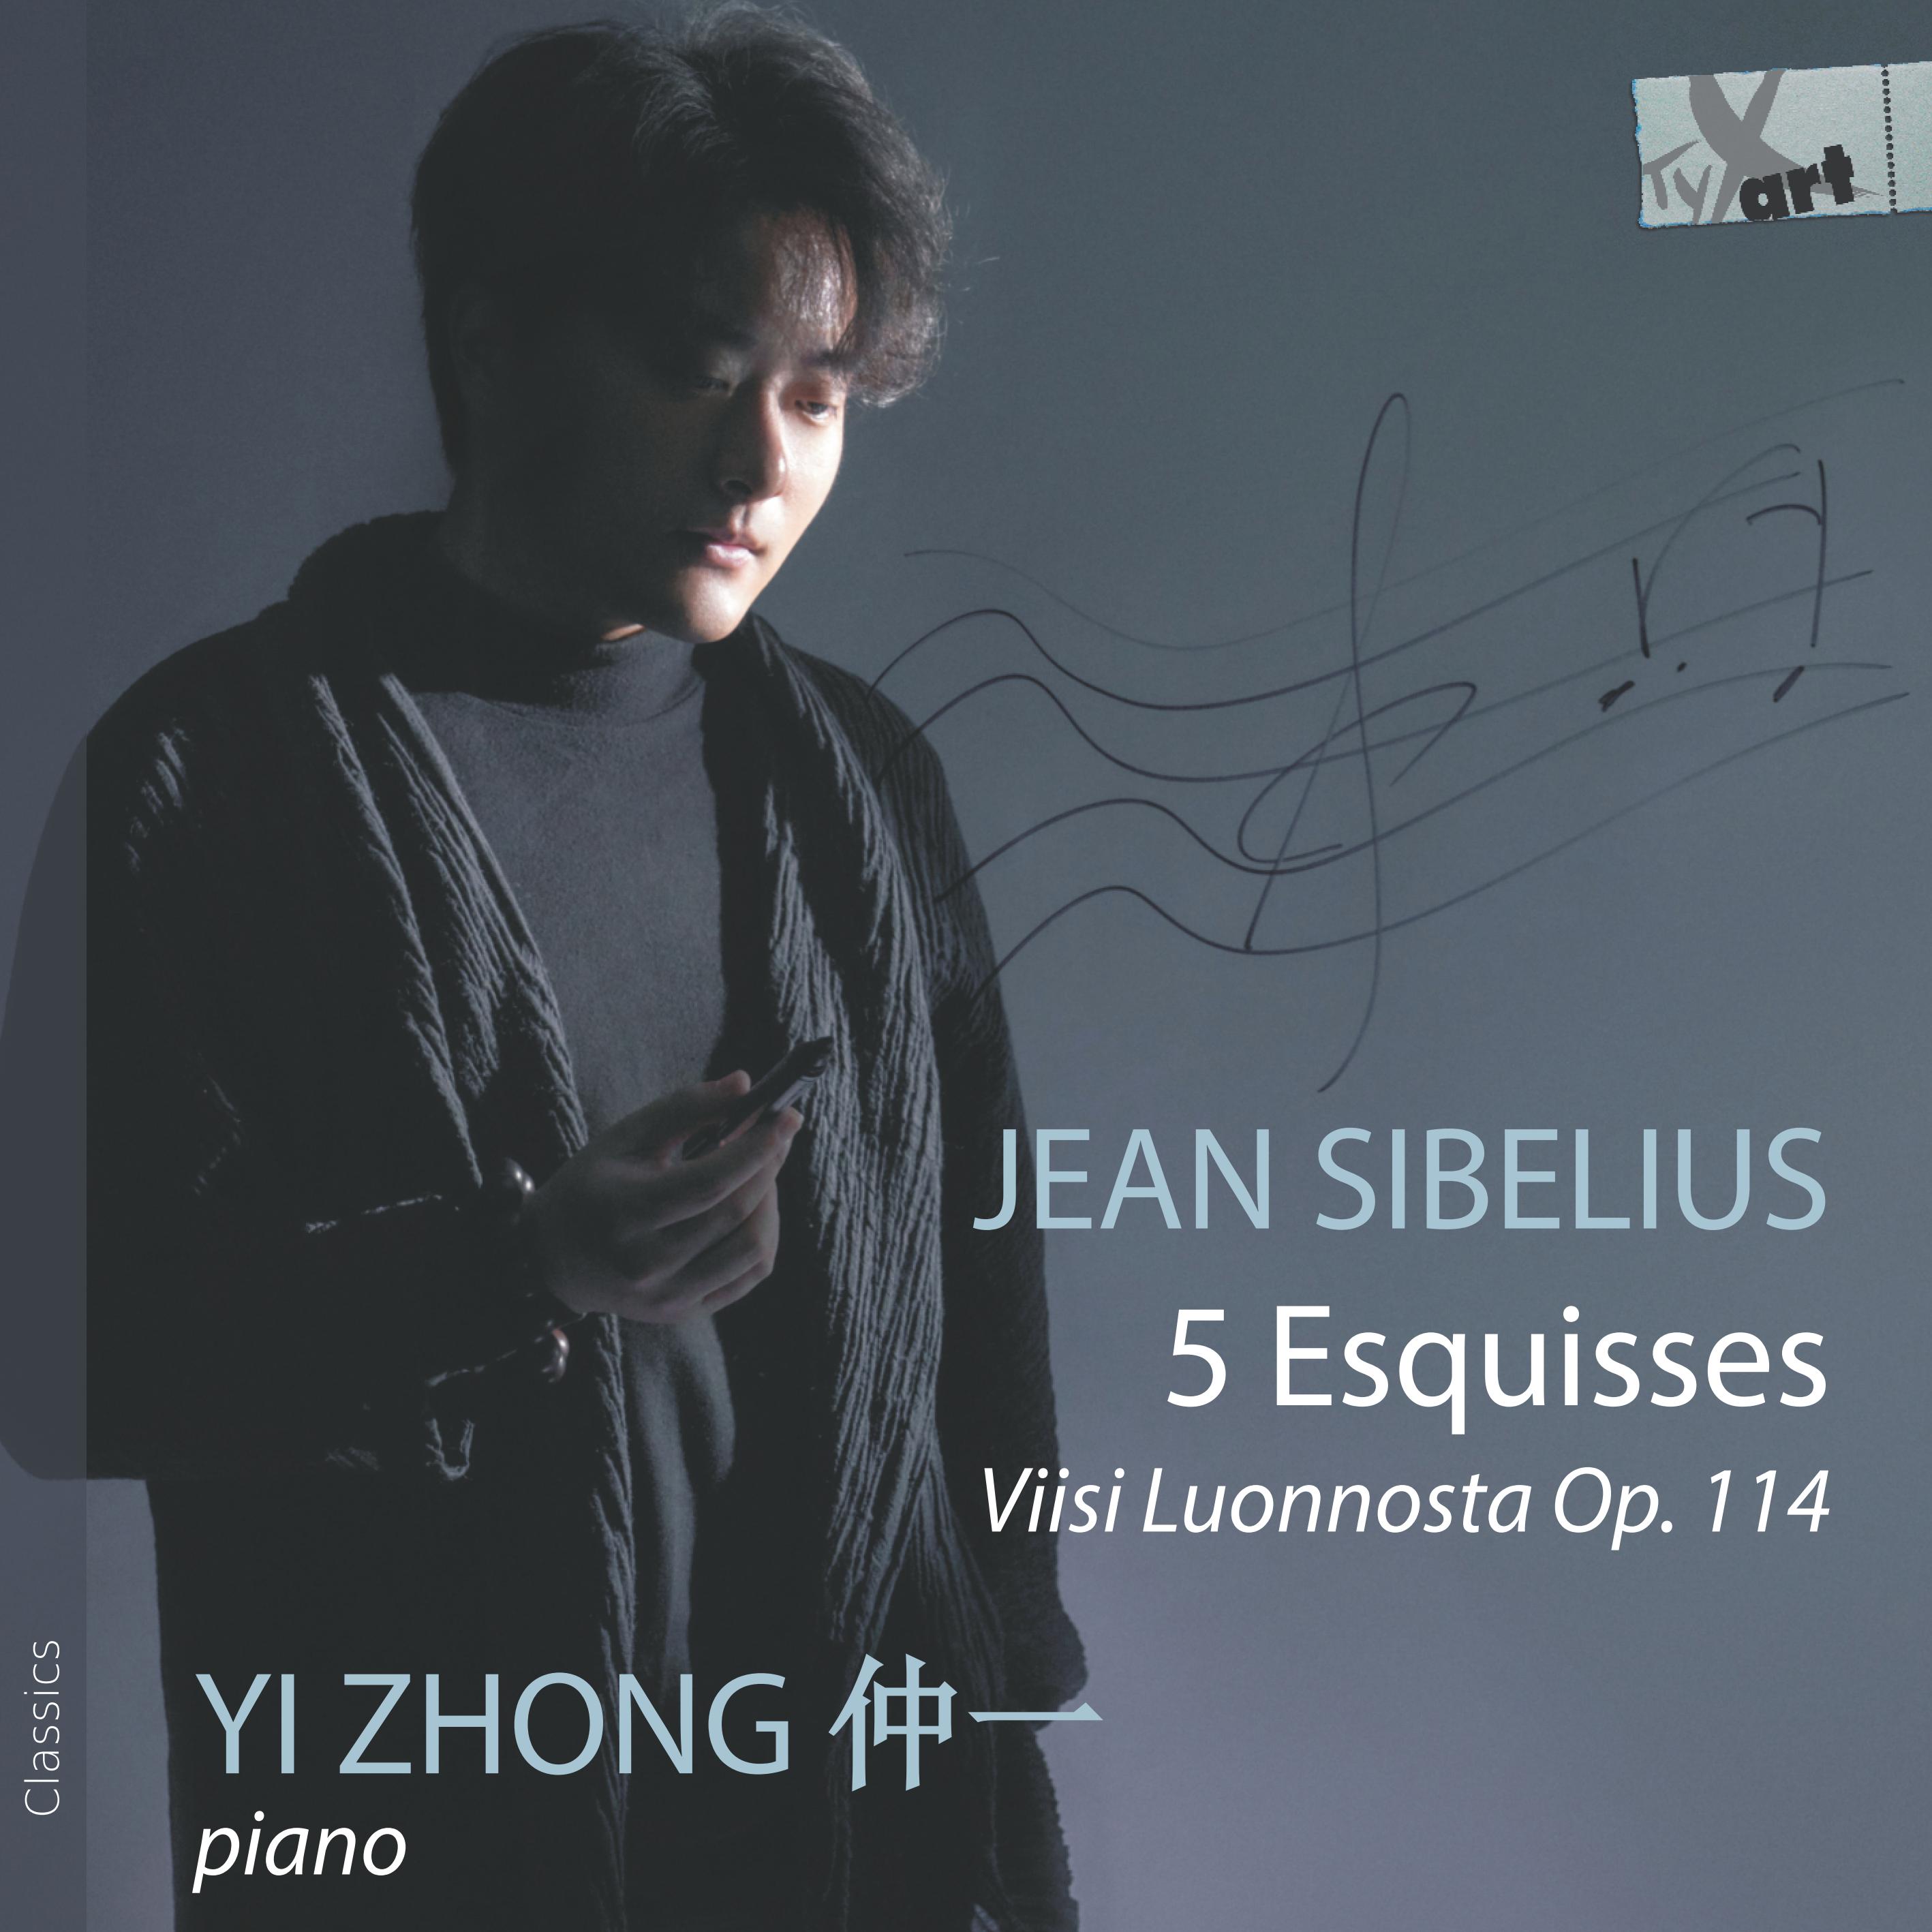 Jean Sibelius - 5 Esquisses, Op. 114 - Yi Zhong, Piano